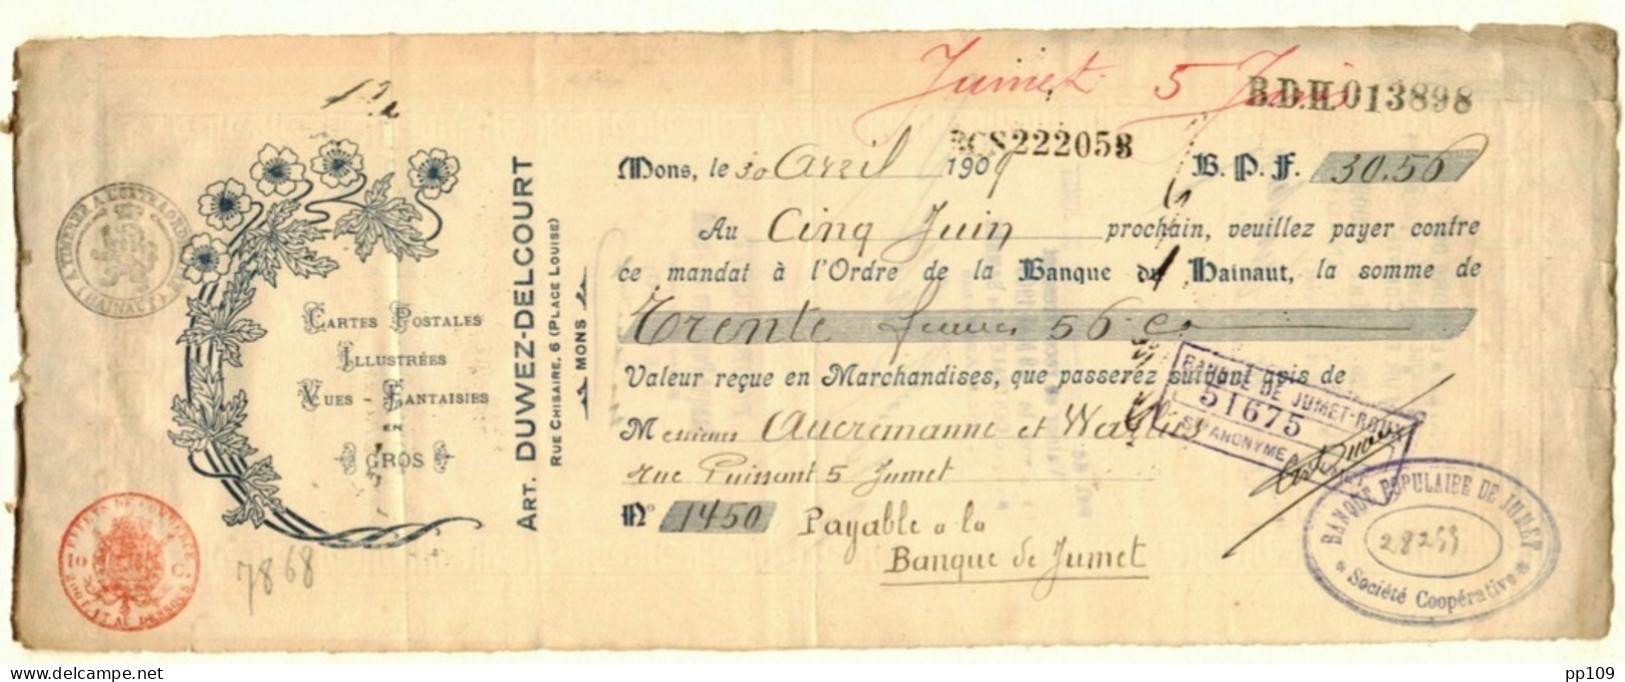 MONS Place Louise, 6 Mandat   Ill. Cartes Postales + Vues Arthur DUWEZ DELCOURT 30 IV 1909 - Documentos